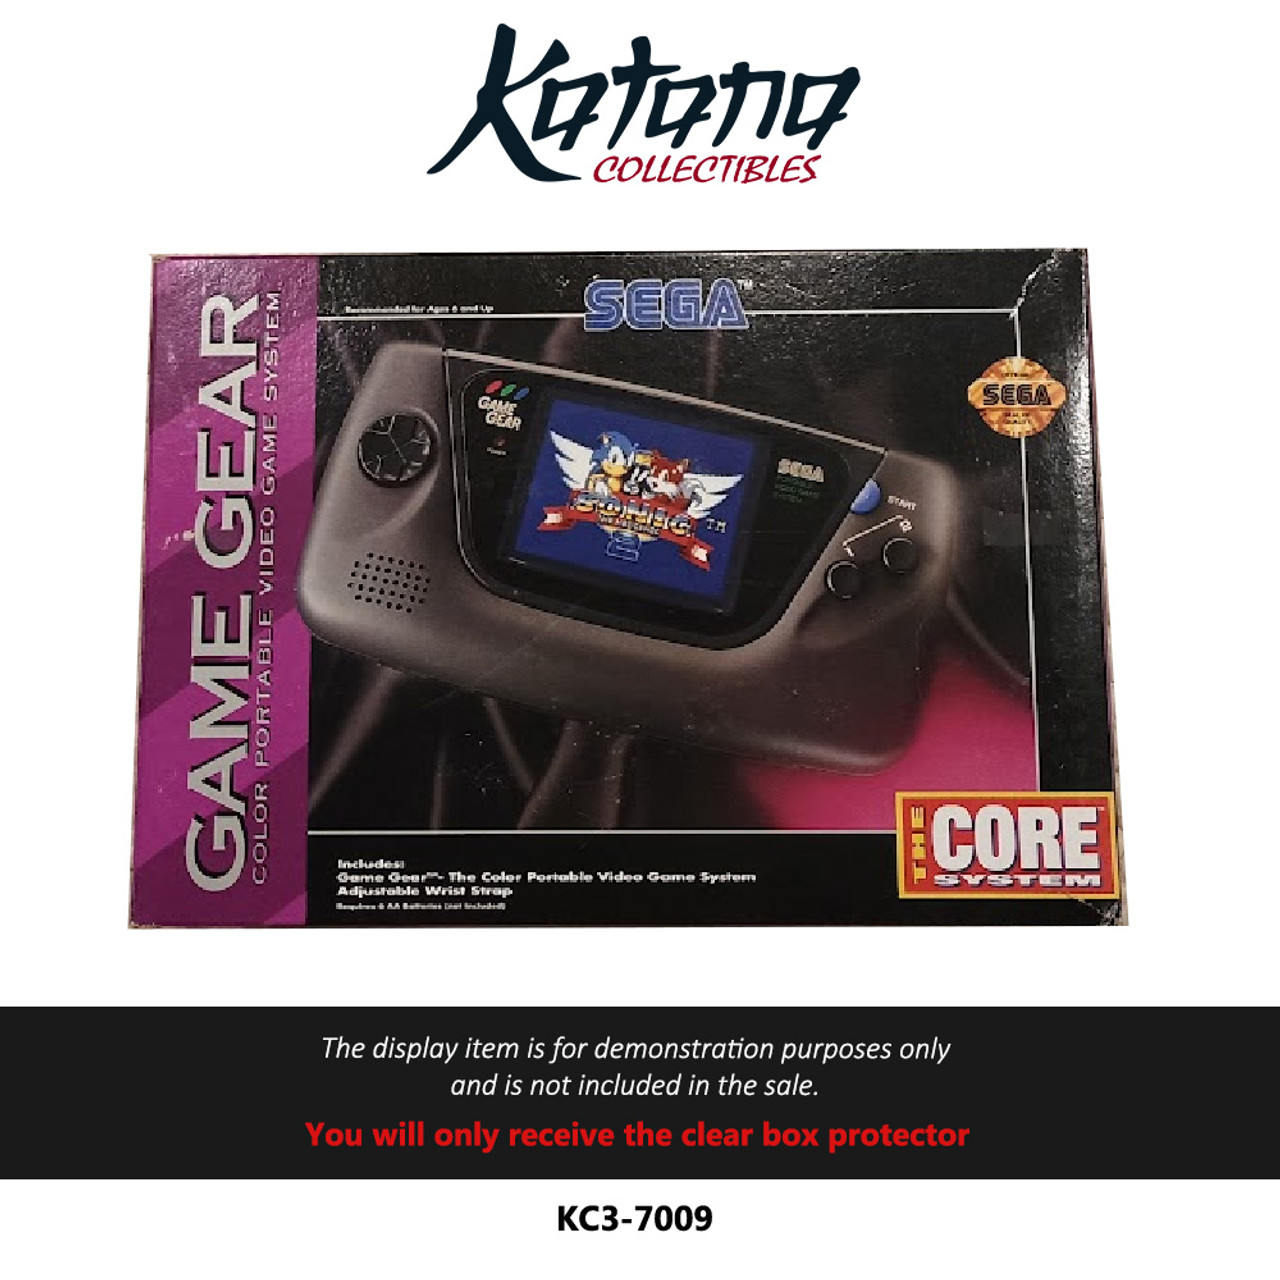 Katana Collectibles Protector For Sega Game Gear Box Console